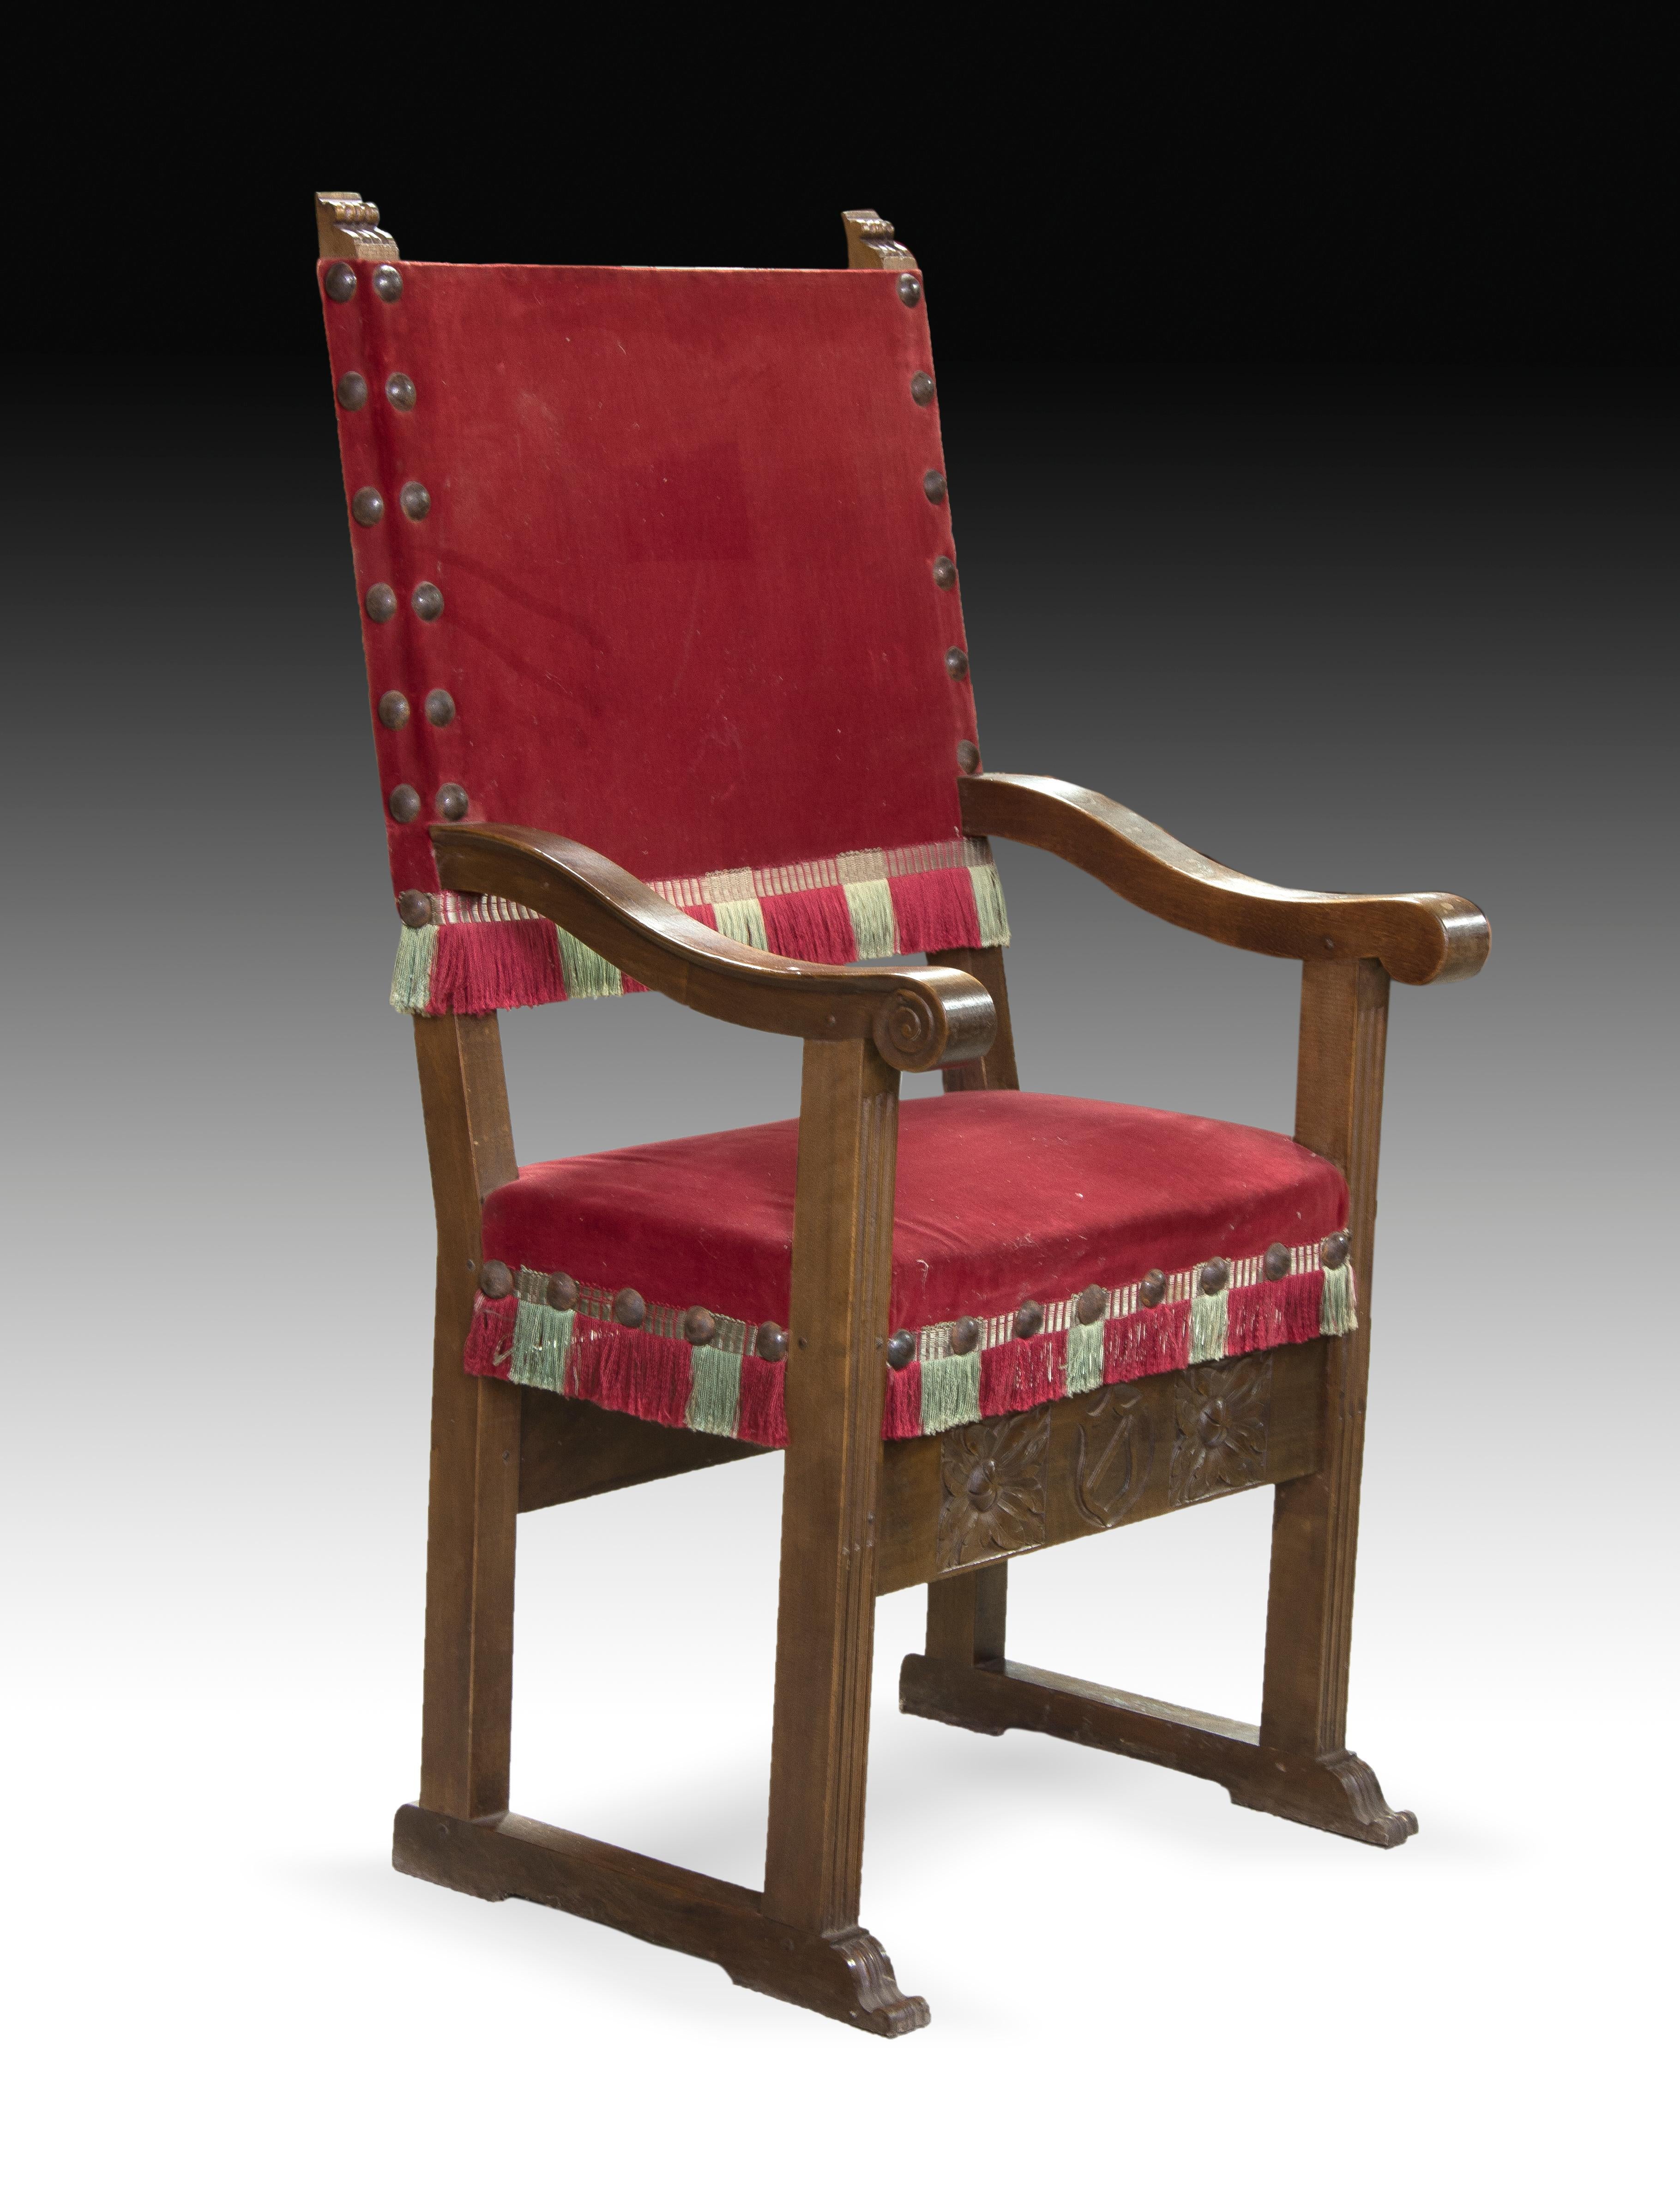 Ce type de siège était très courant en Espagne malgré son origine italienne. Cette typologie a été introduite au XVIe siècle et est restée habituelle dans le mobilier espagnol au cours des siècles suivants, devenant vraiment populaire aux XIXe et